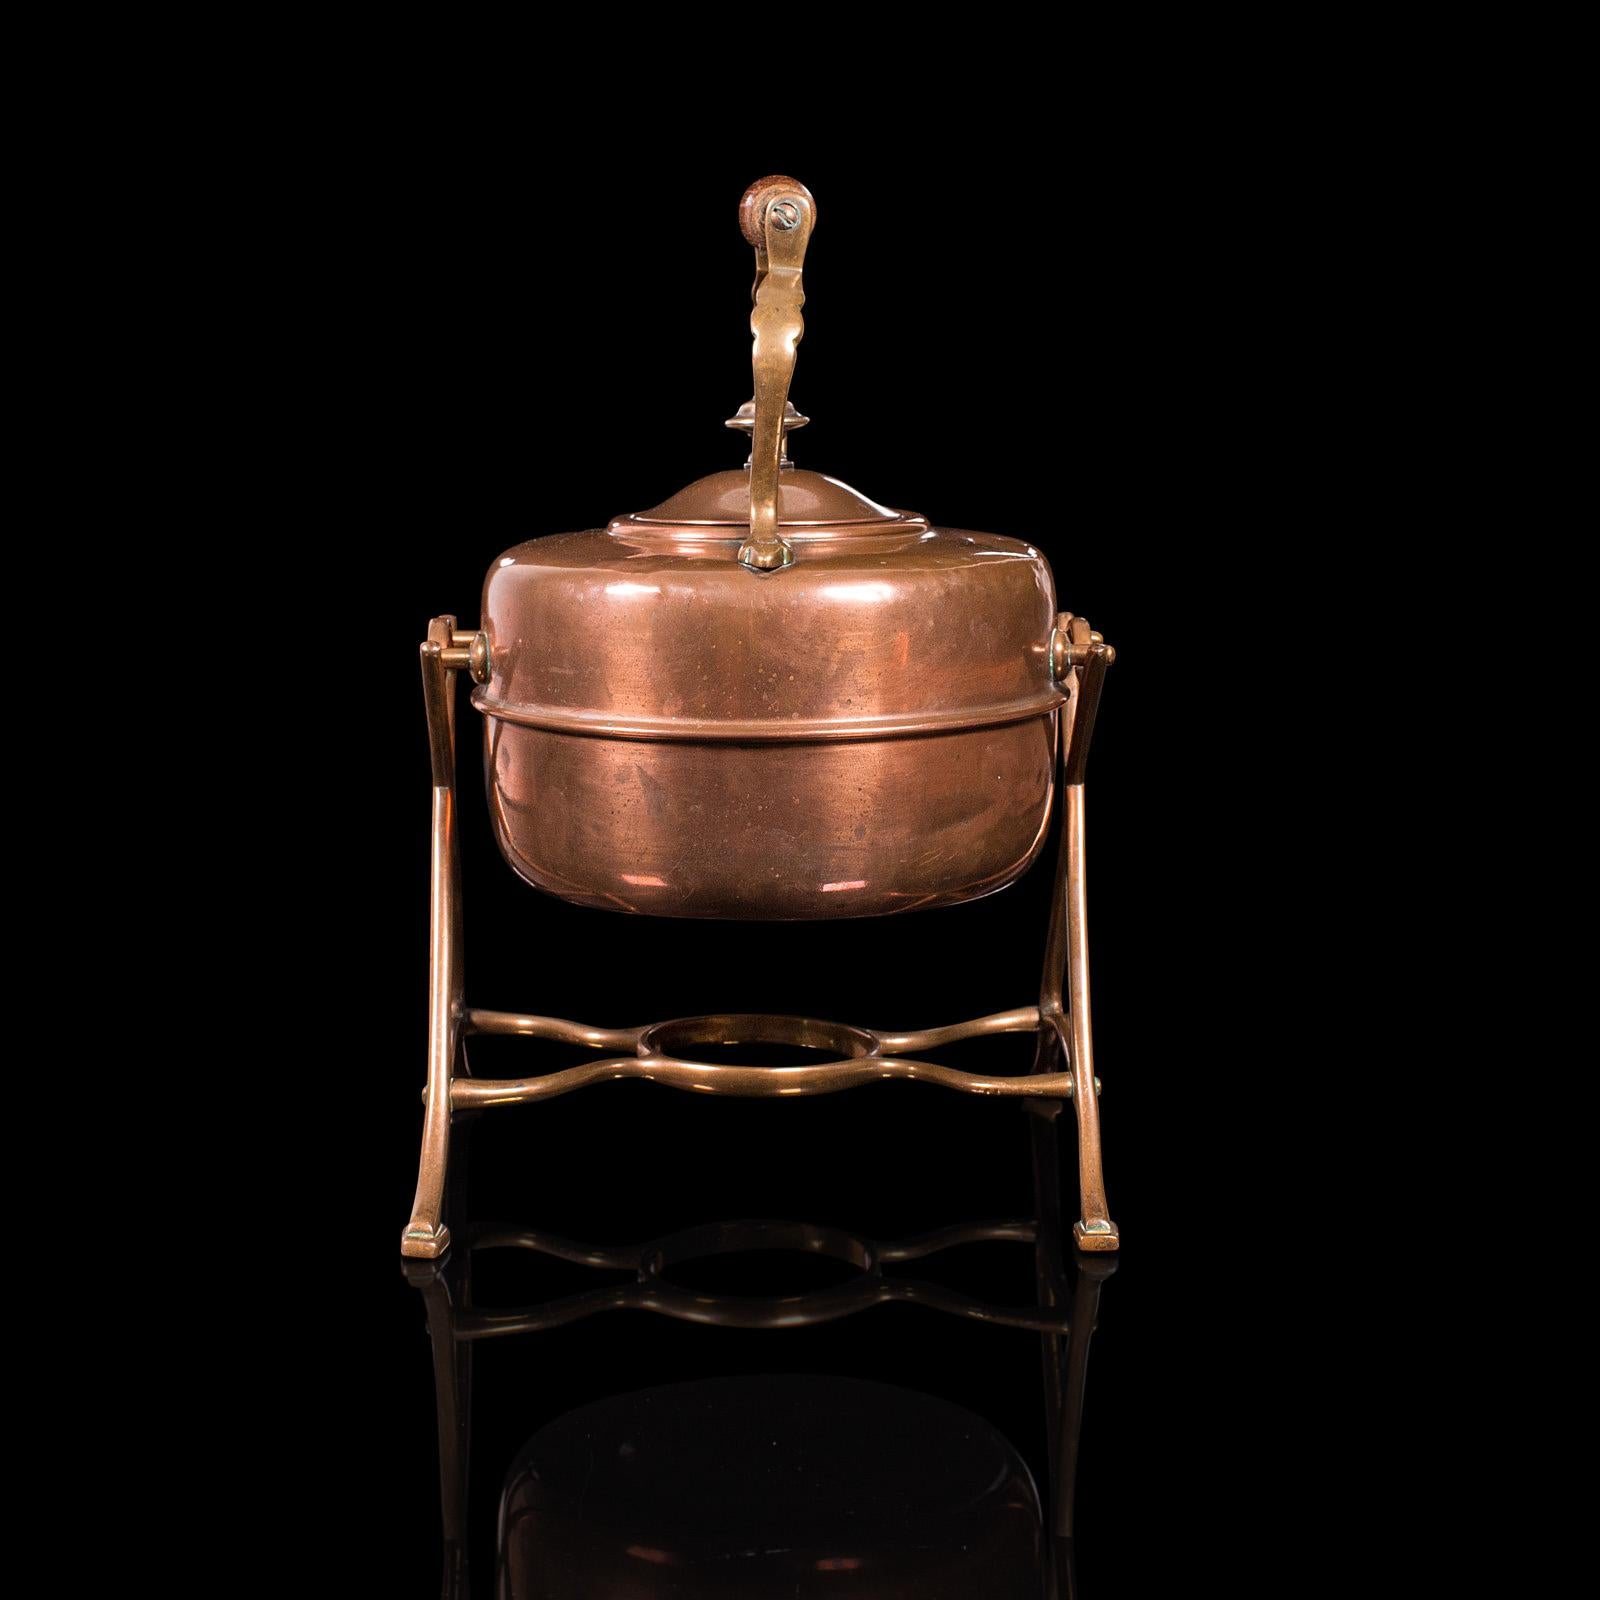 19th Century Antique Spirit Kettle, English, Copper, Brass, Teakettle, Stand, Victorian, 1900